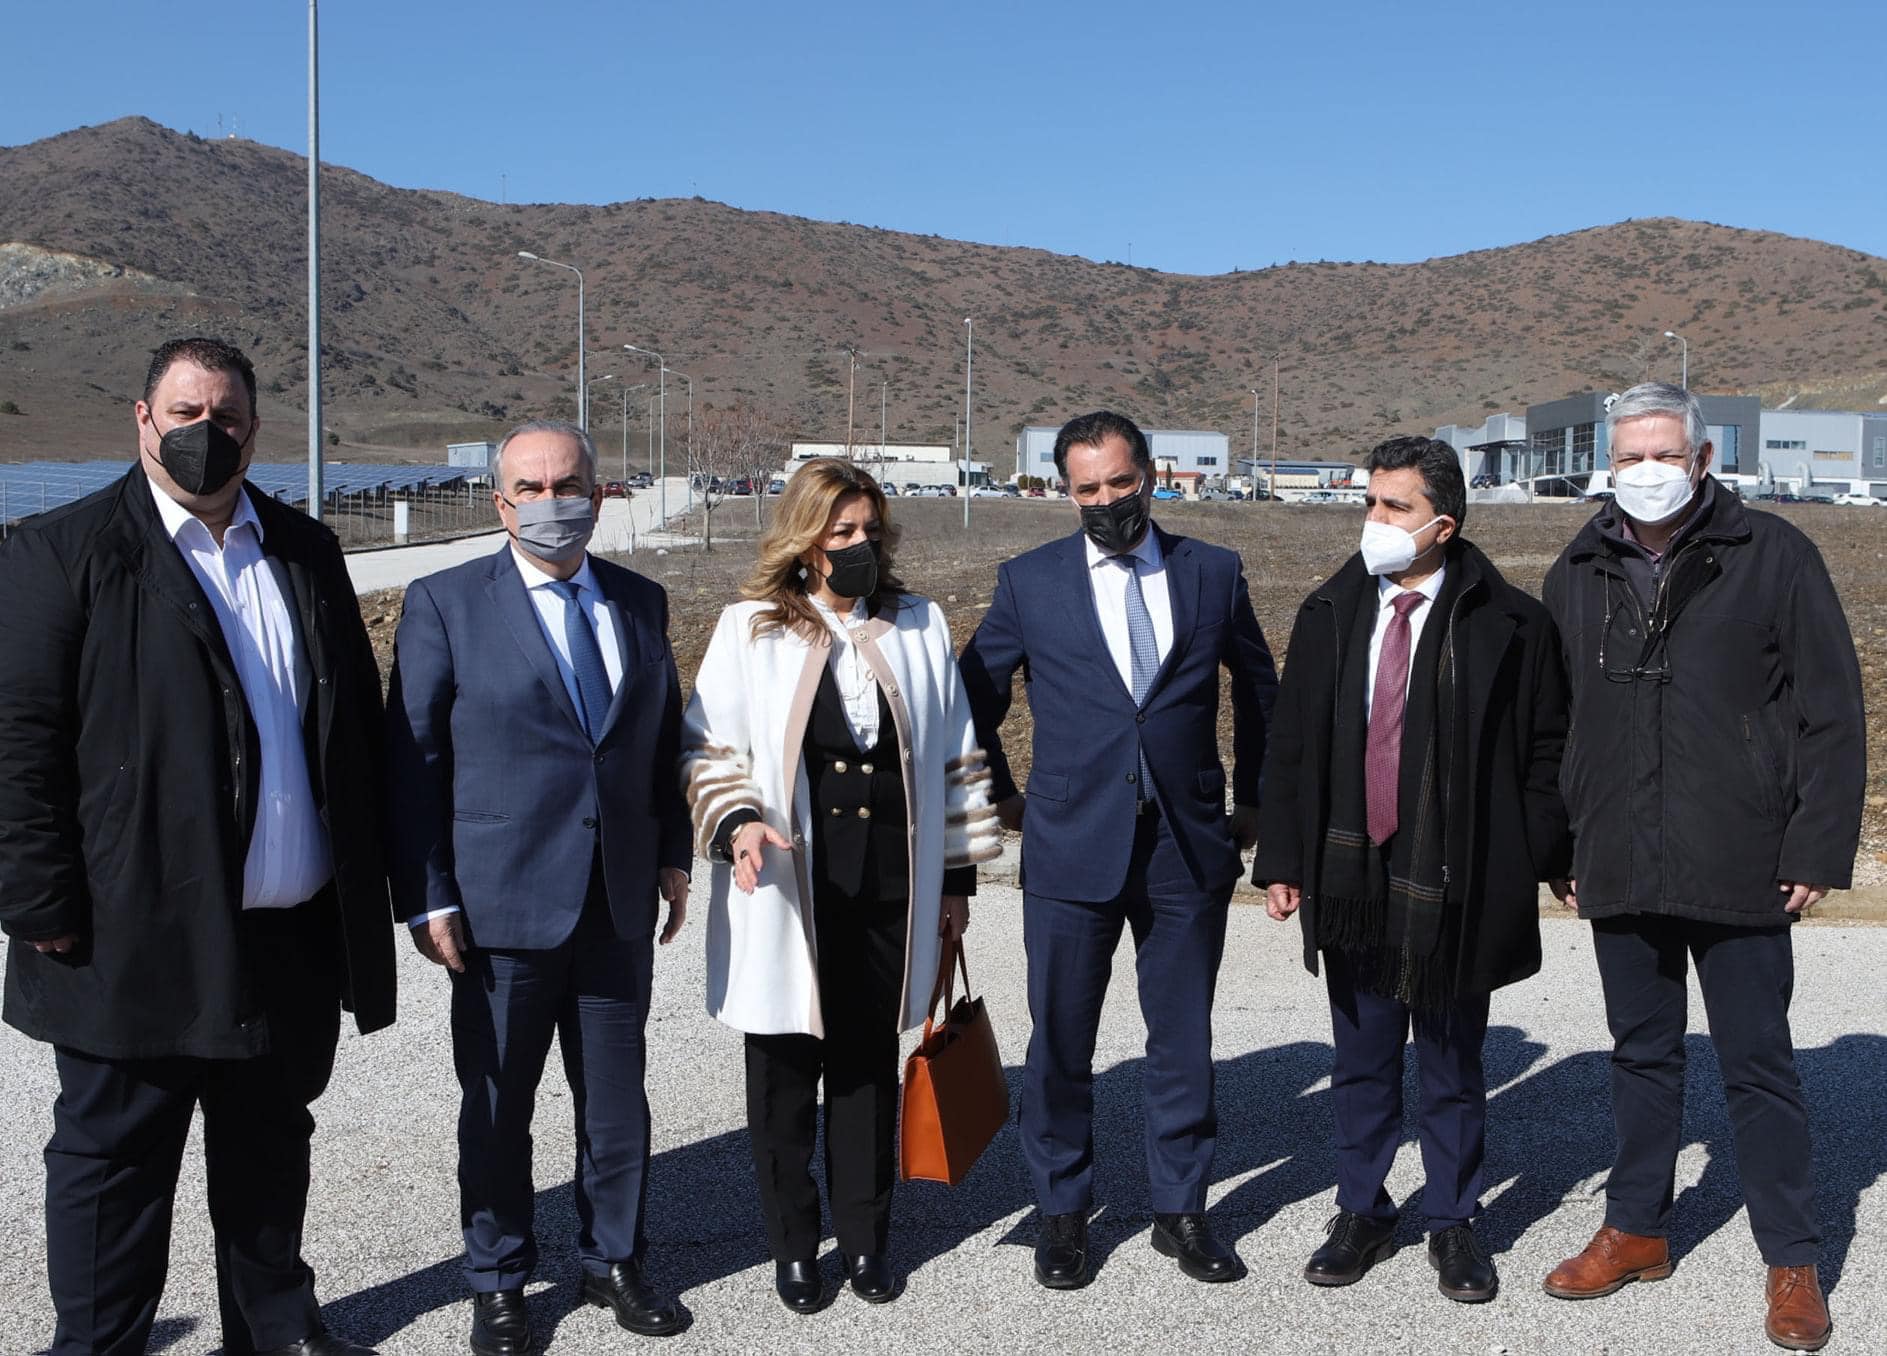 Ο Υπουργός Ανάπτυξης και Επενδύσεων Άδωνις Γεωργιάδης και ο Αναπληρωτής Υπουργός Νίκος Παπαθανάσης στην Π.Ε. Καστοριάς